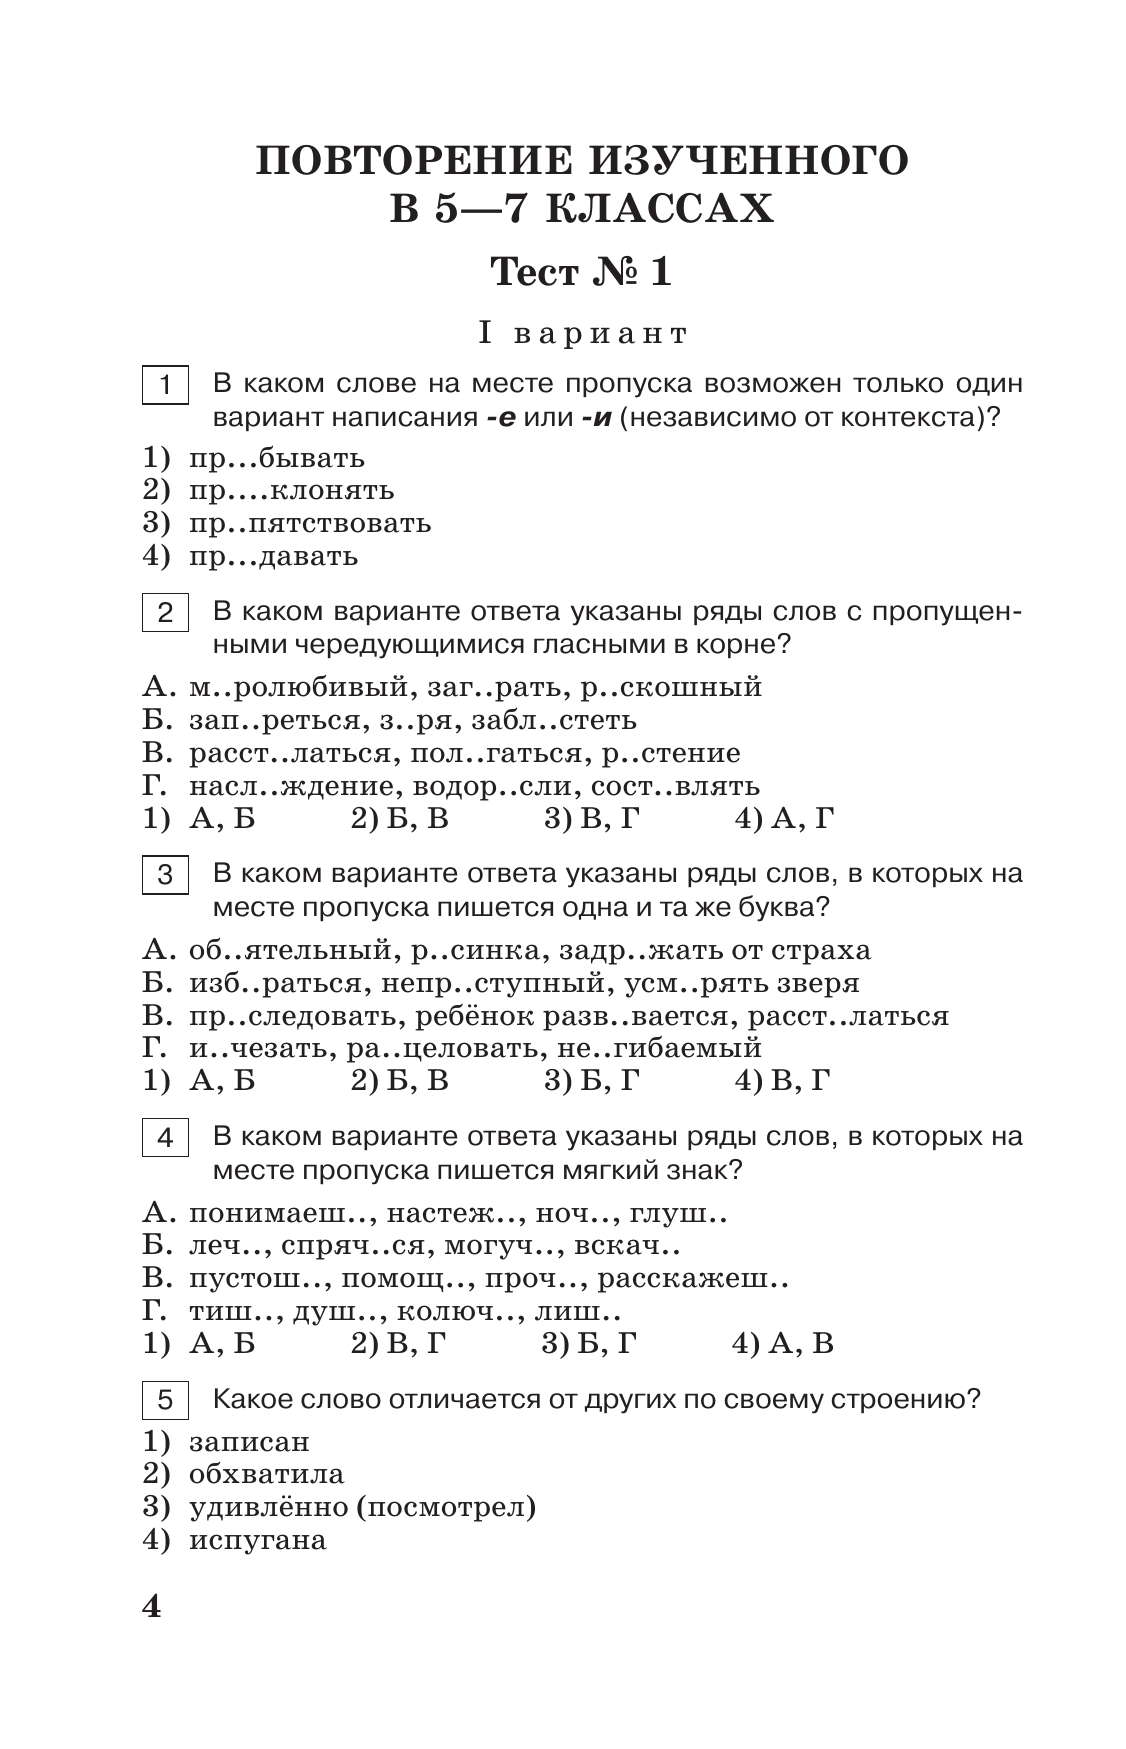 Тестовые задания по русскому языку. 8 класс. 10